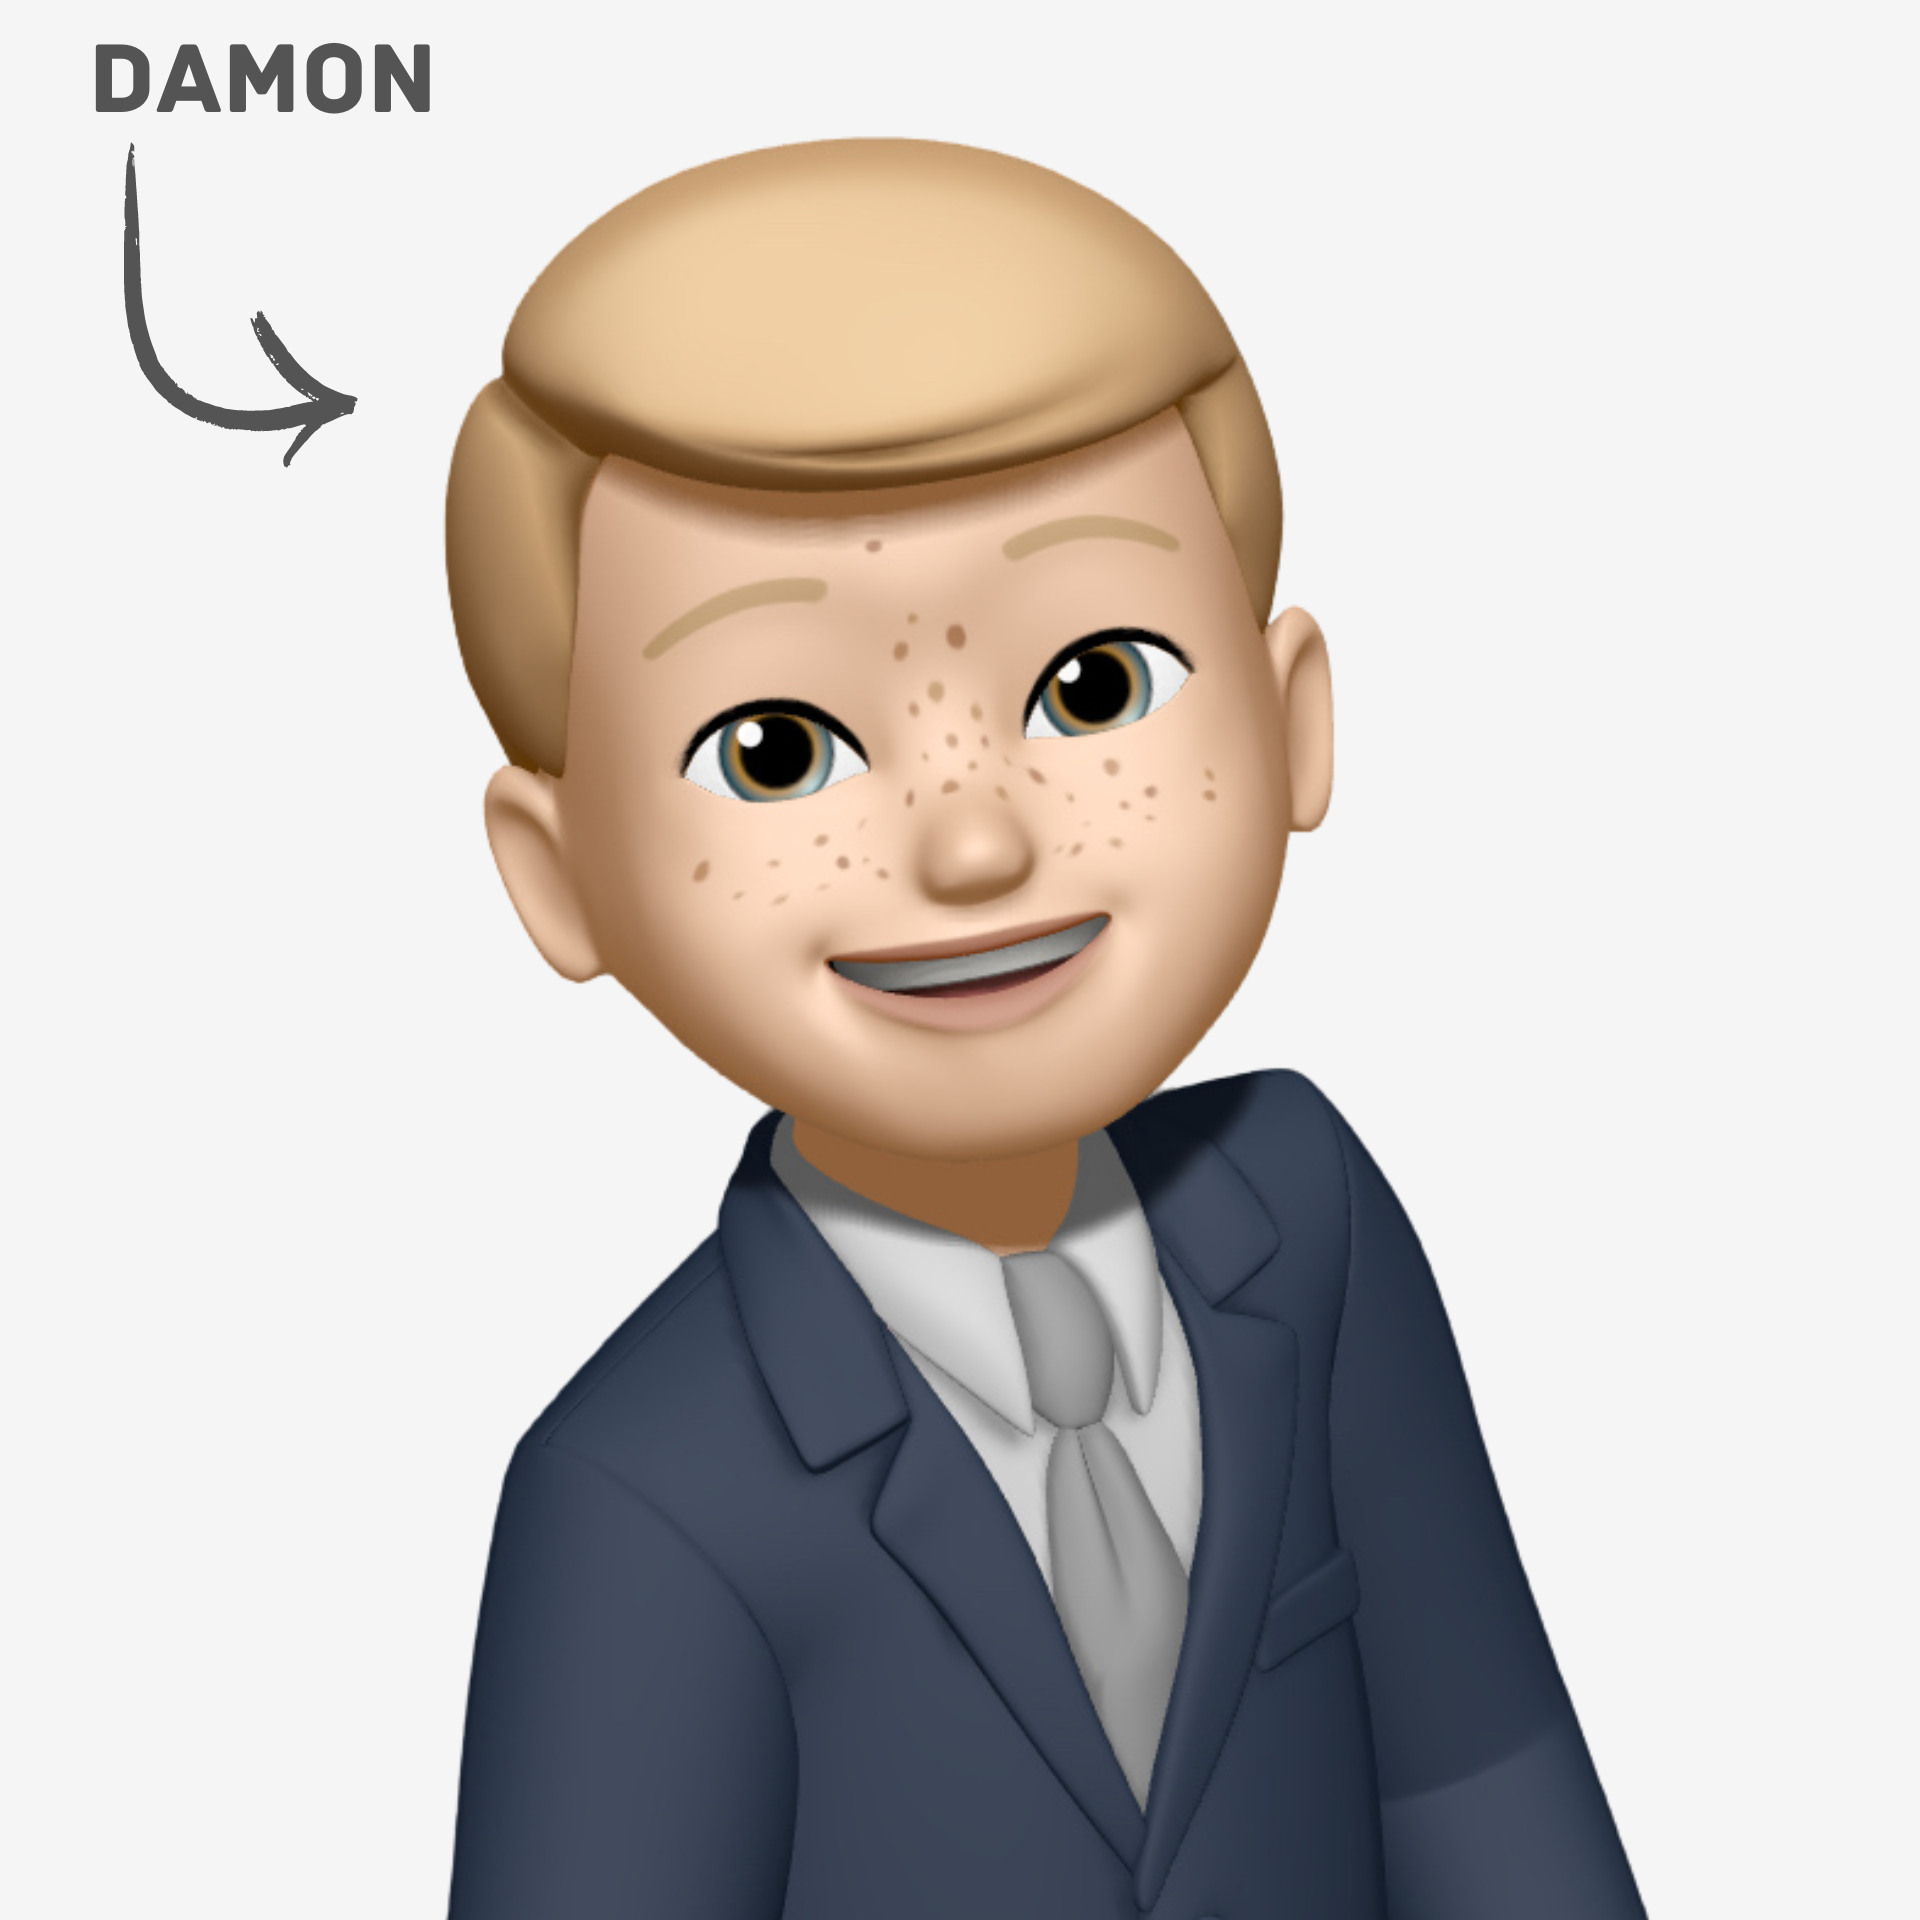 digital emoji of mayself dressed in a suit